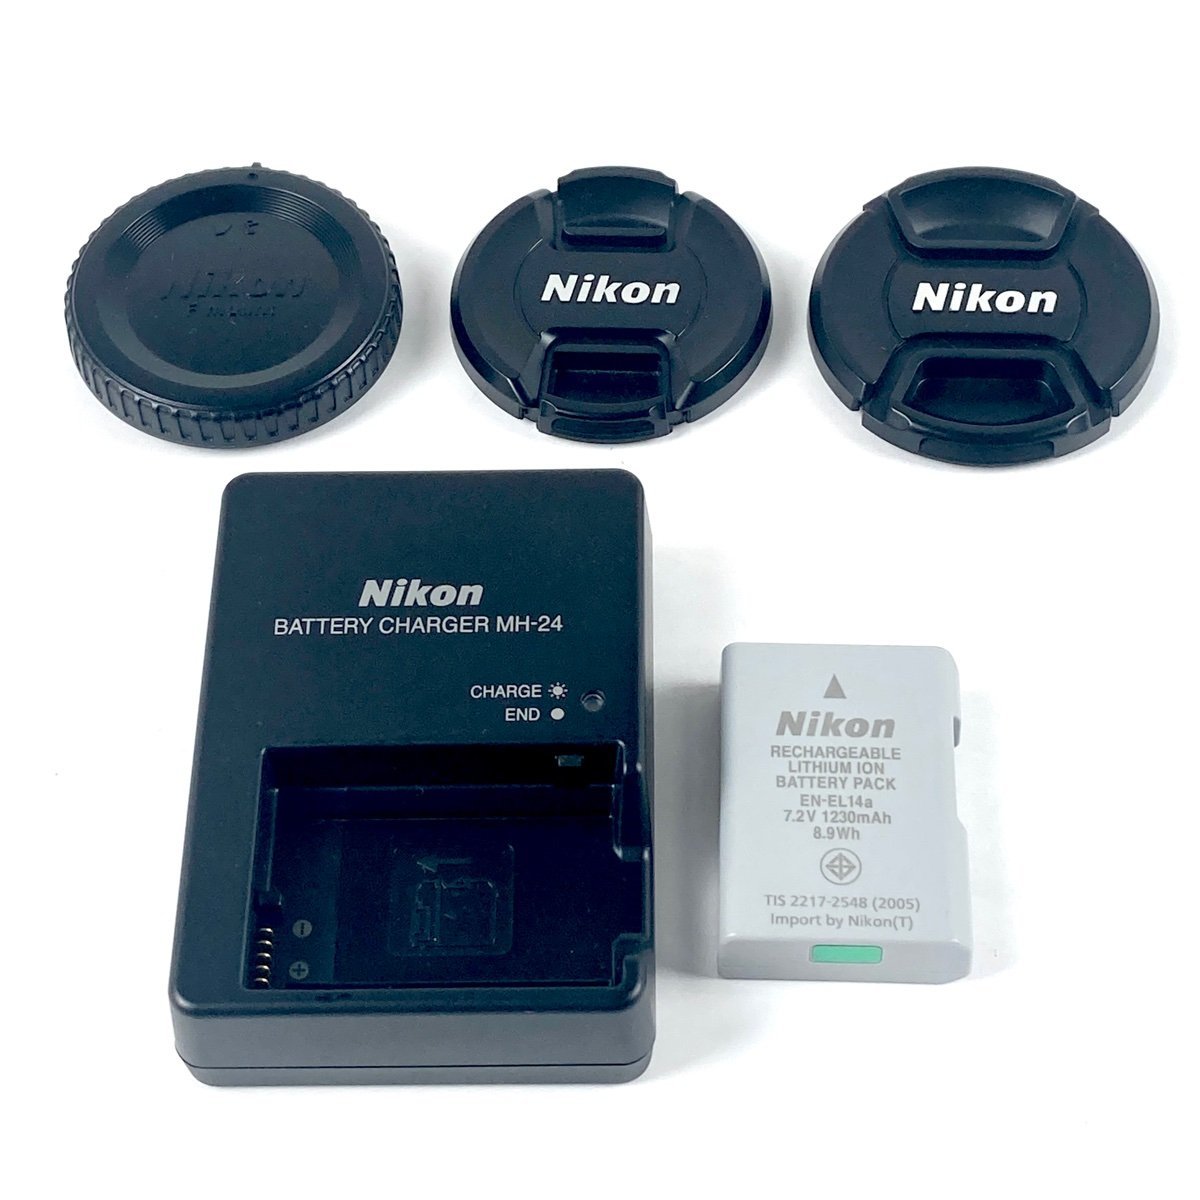 ニコン Nikon D3500 ダブルズームキット デジタル 一眼レフカメラ 【中古】_バイセル 31051_10